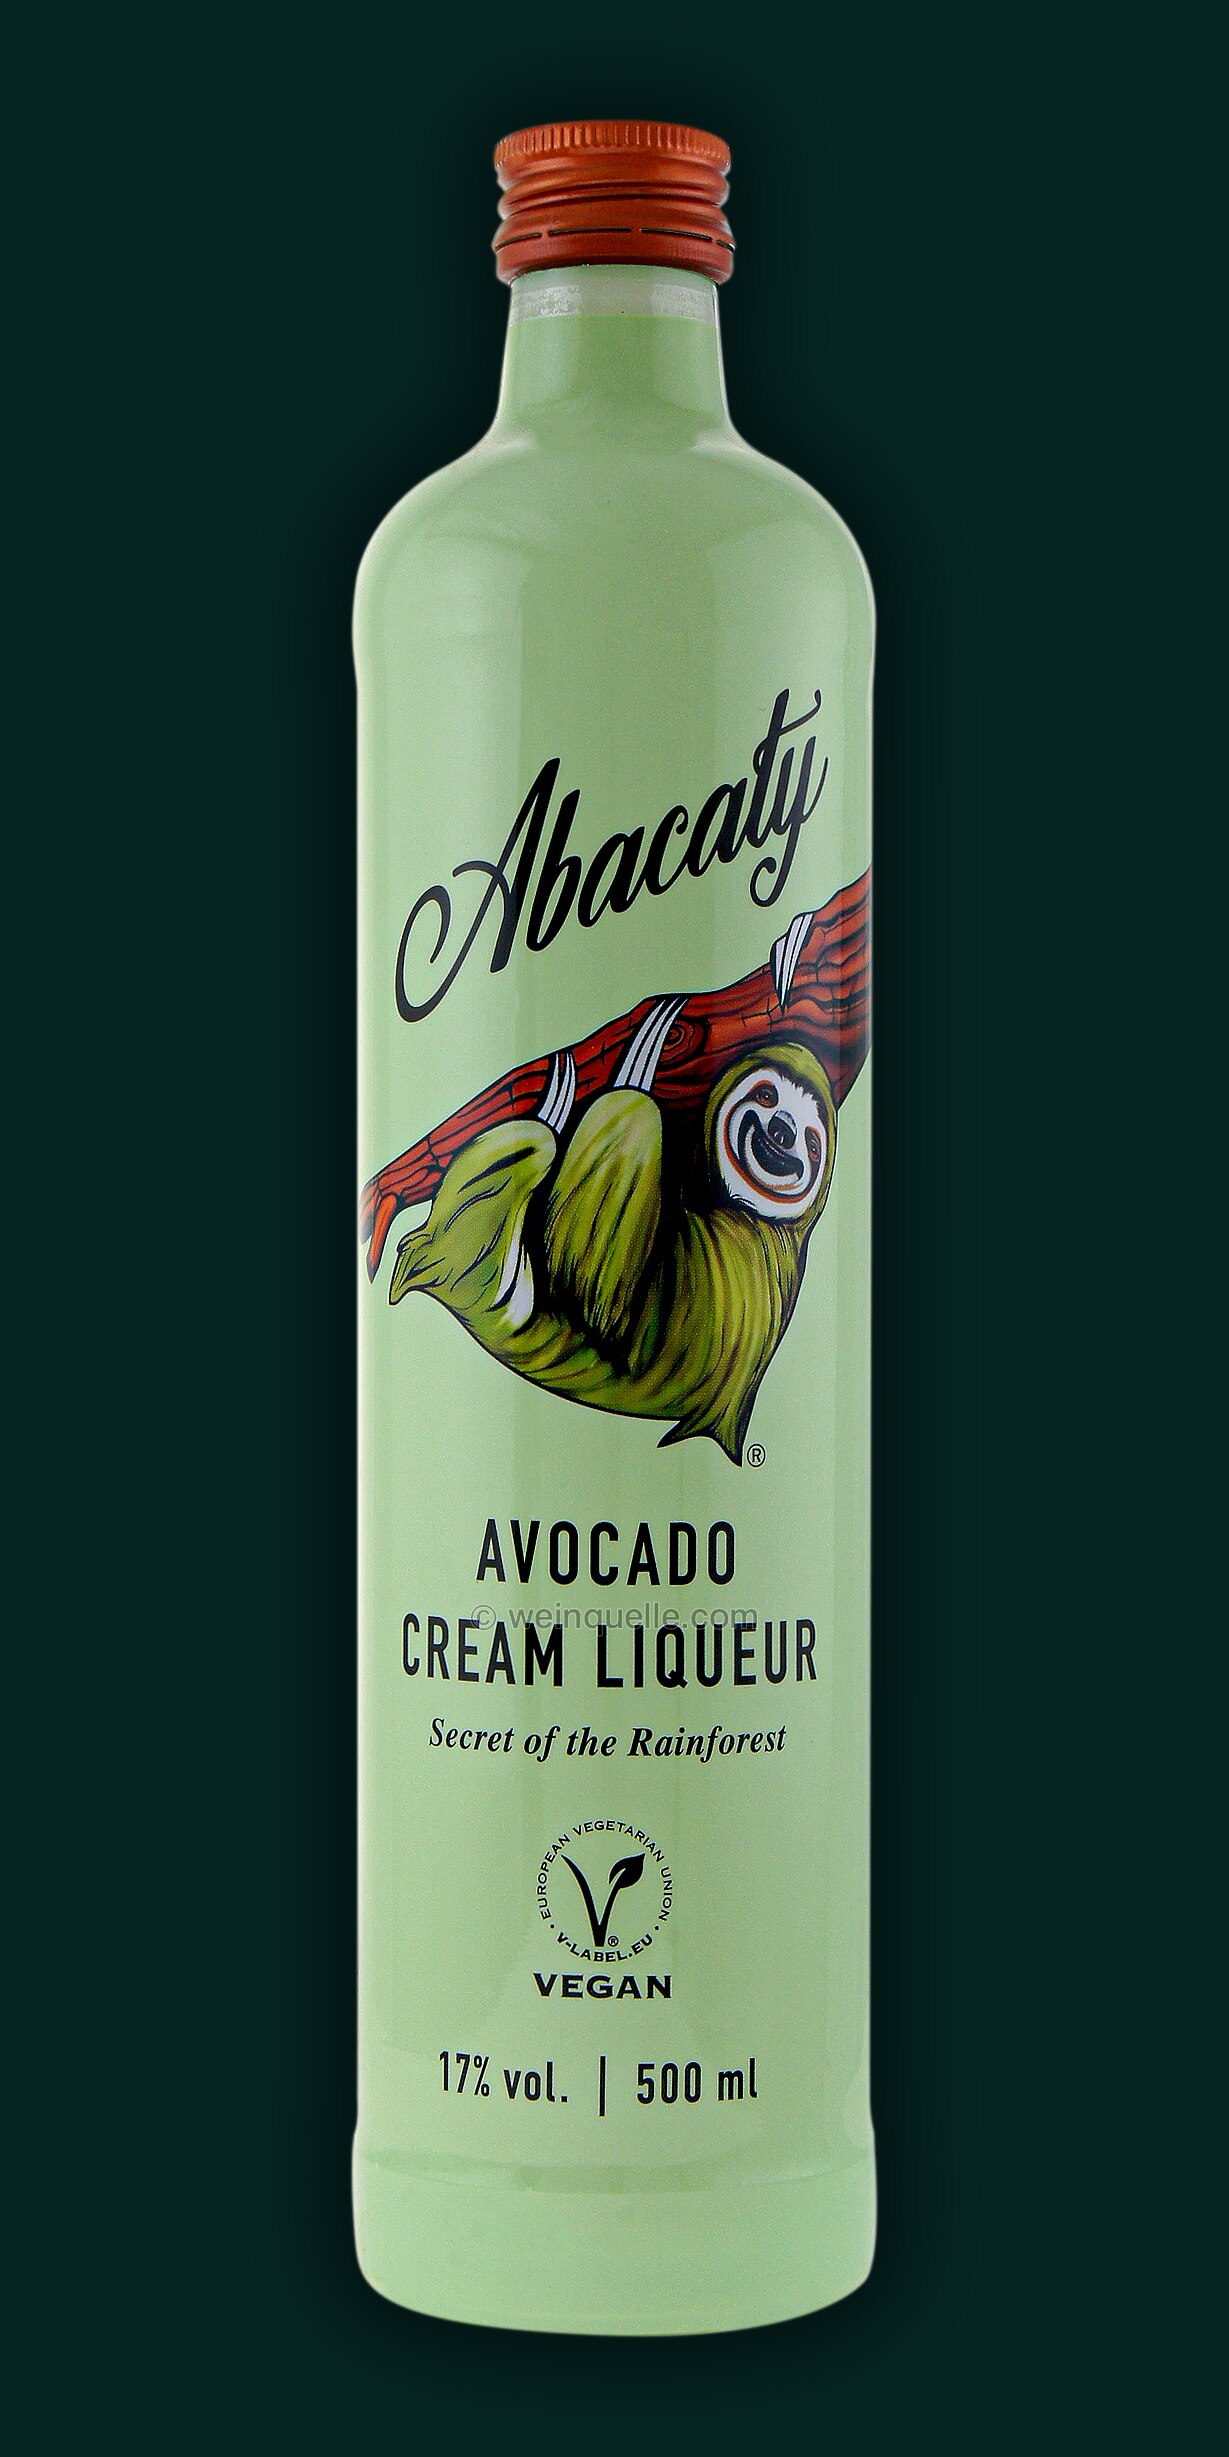 Abacaty Avocado Cream Liqueur, 18,75 € - Weinquelle Lühmann